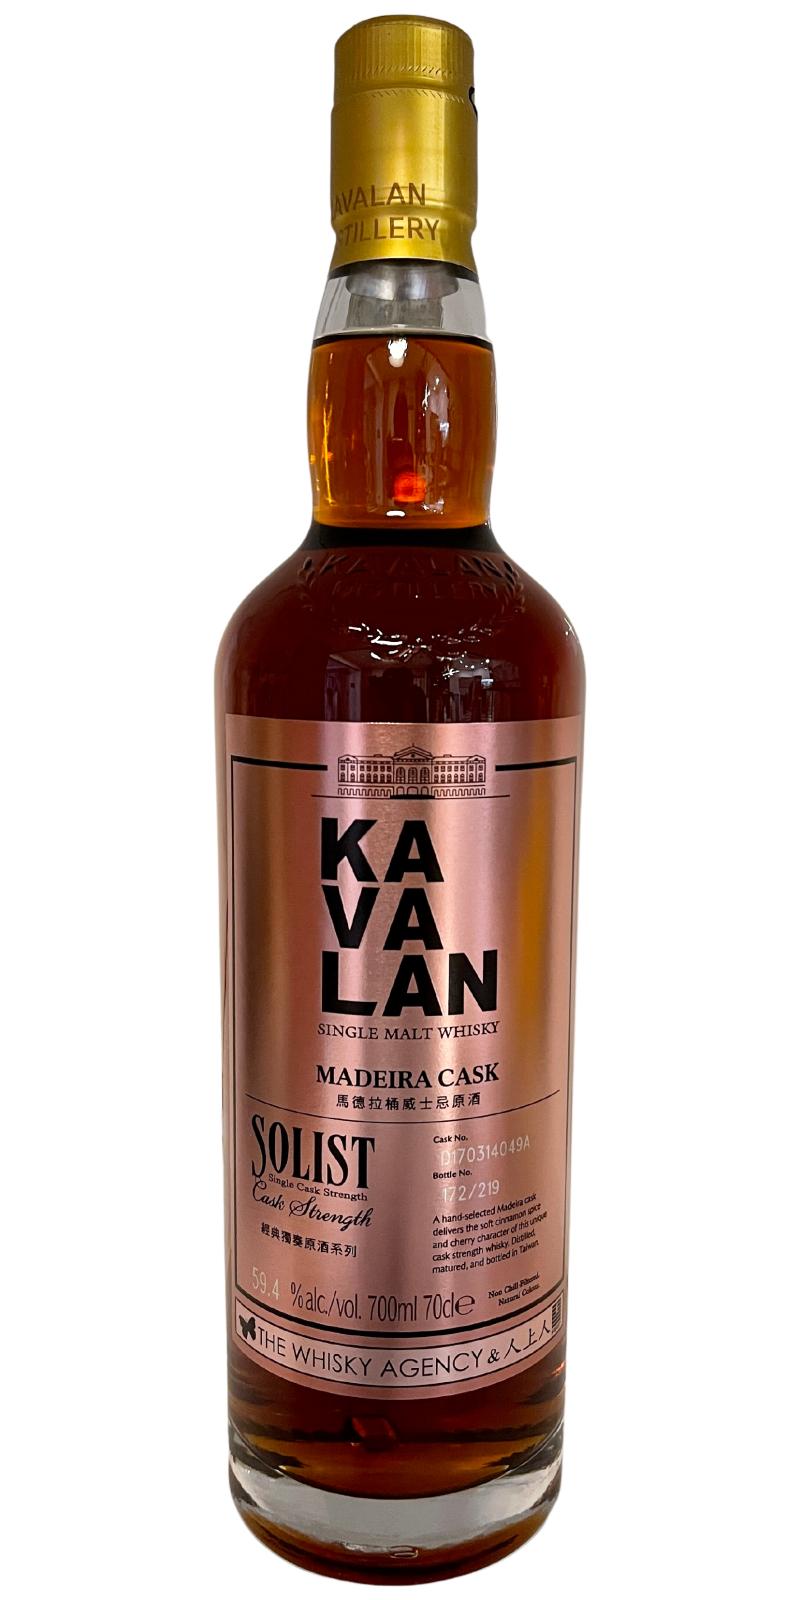 Kavalan Solist Madeira The Whisky Agency & Ren Shang Ren 59.4% 700ml